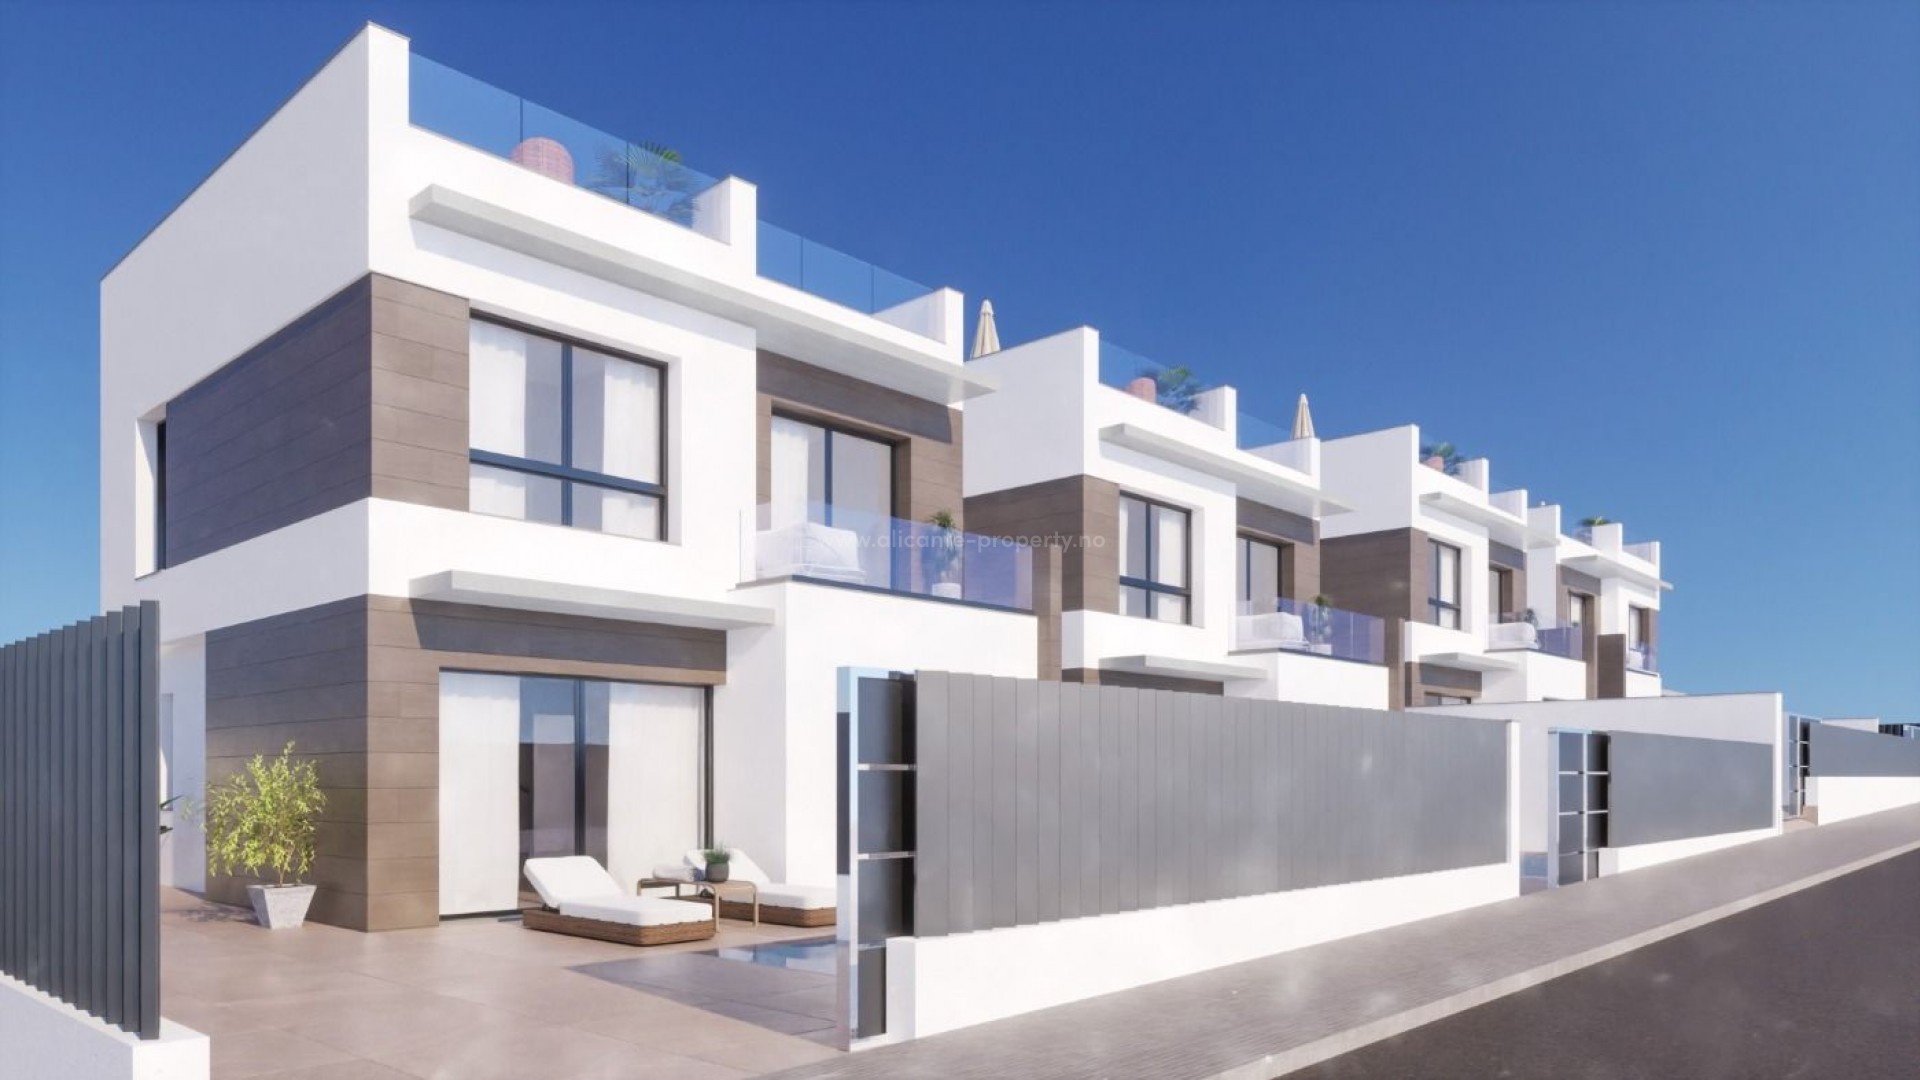 Nybygg av moderne villaer/hus i Benijofar, 3 soverom, 3 bad, nær strand i Guardamar og flere golfbane, privat hage med basseng, privat parkering